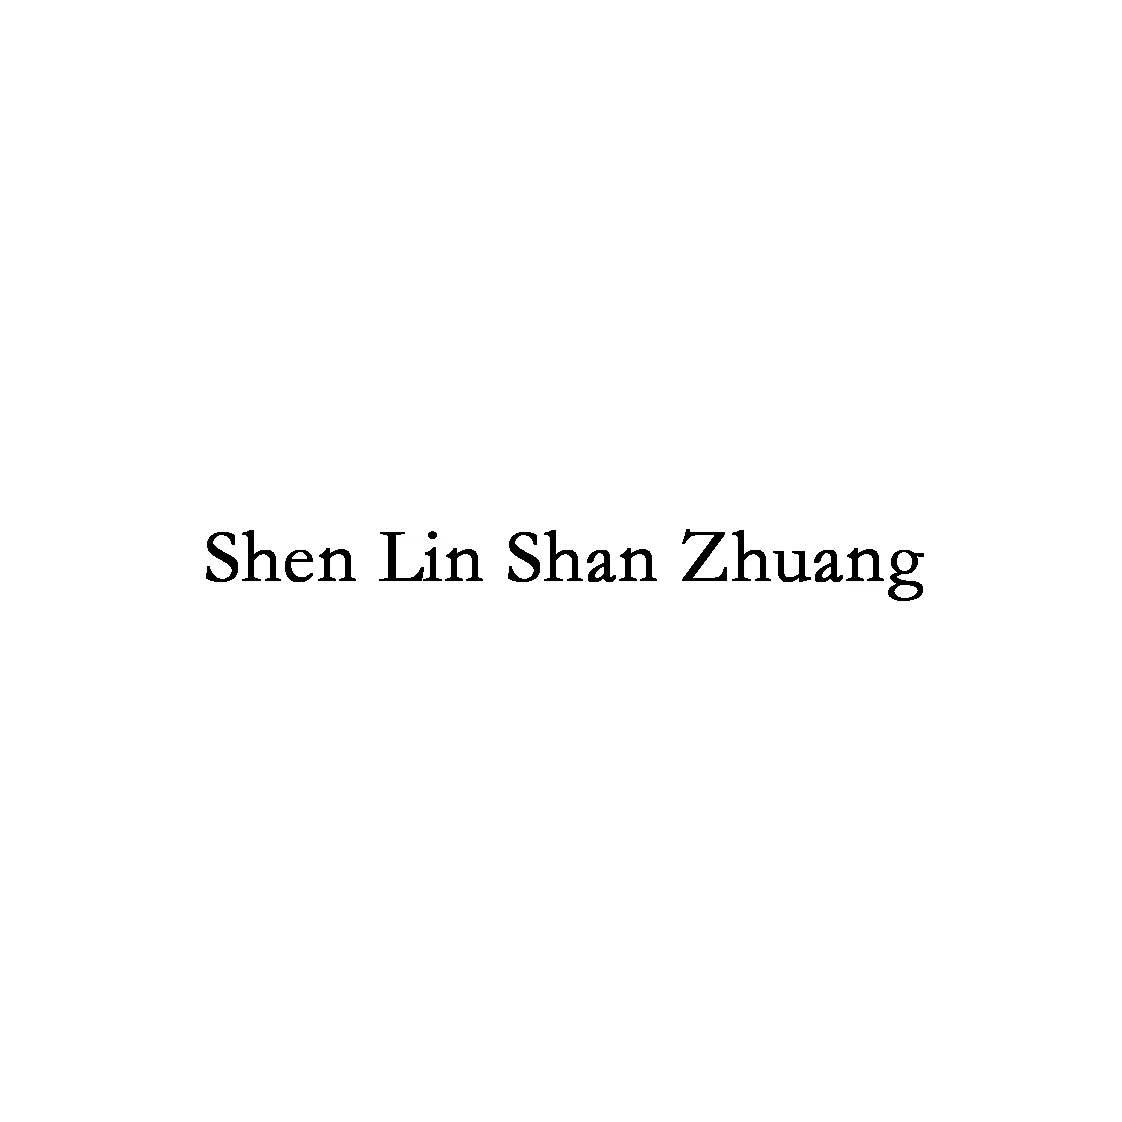 SHEN LIN SHAN ZHUANG